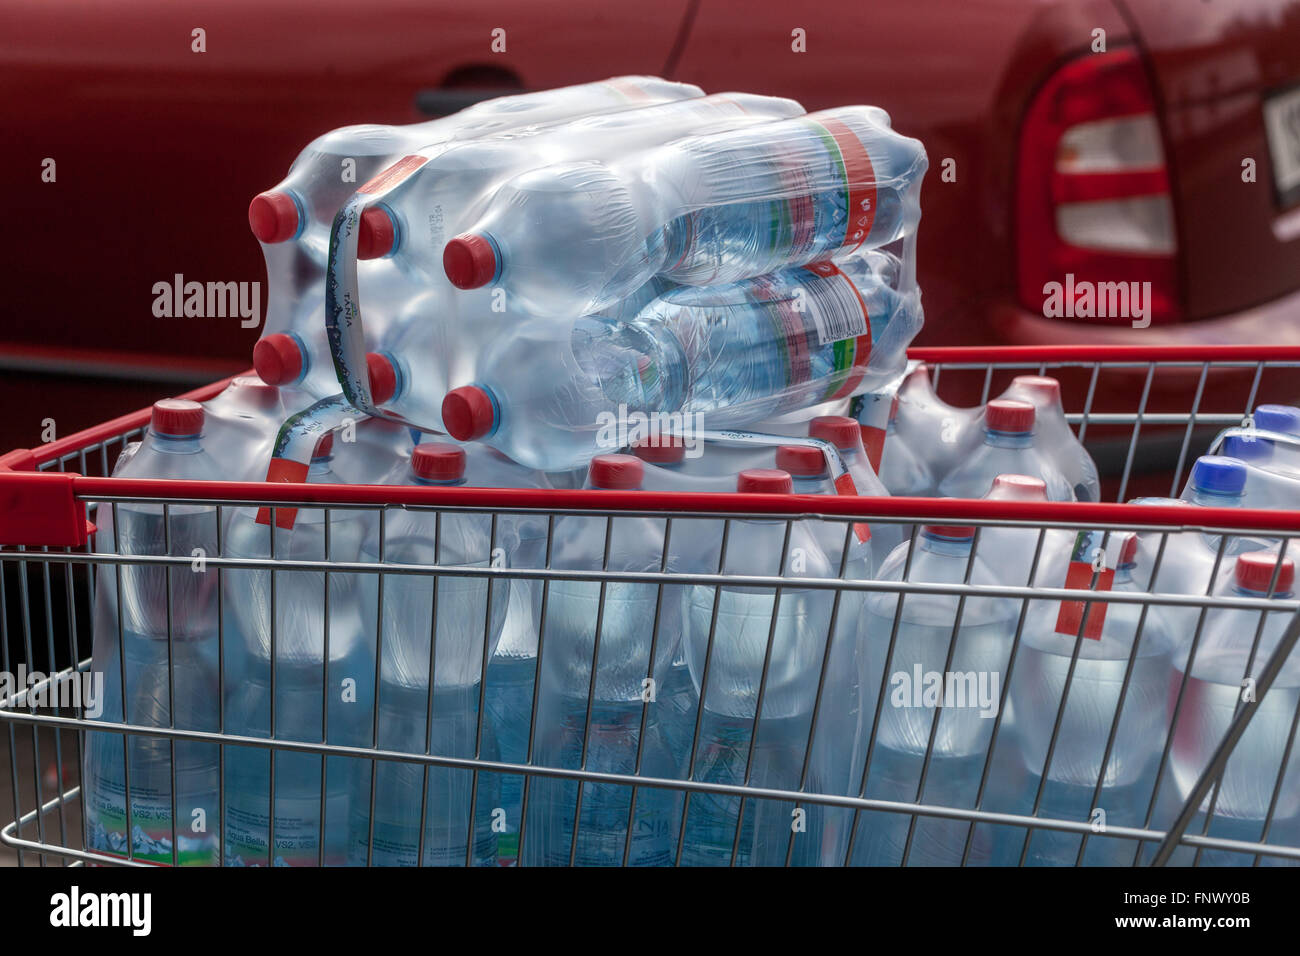 Acqua in bottiglia acqua potabile bottiglie di plastica nel carrello della spesa bottiglie d'acqua nel carrello del supermercato Foto Stock